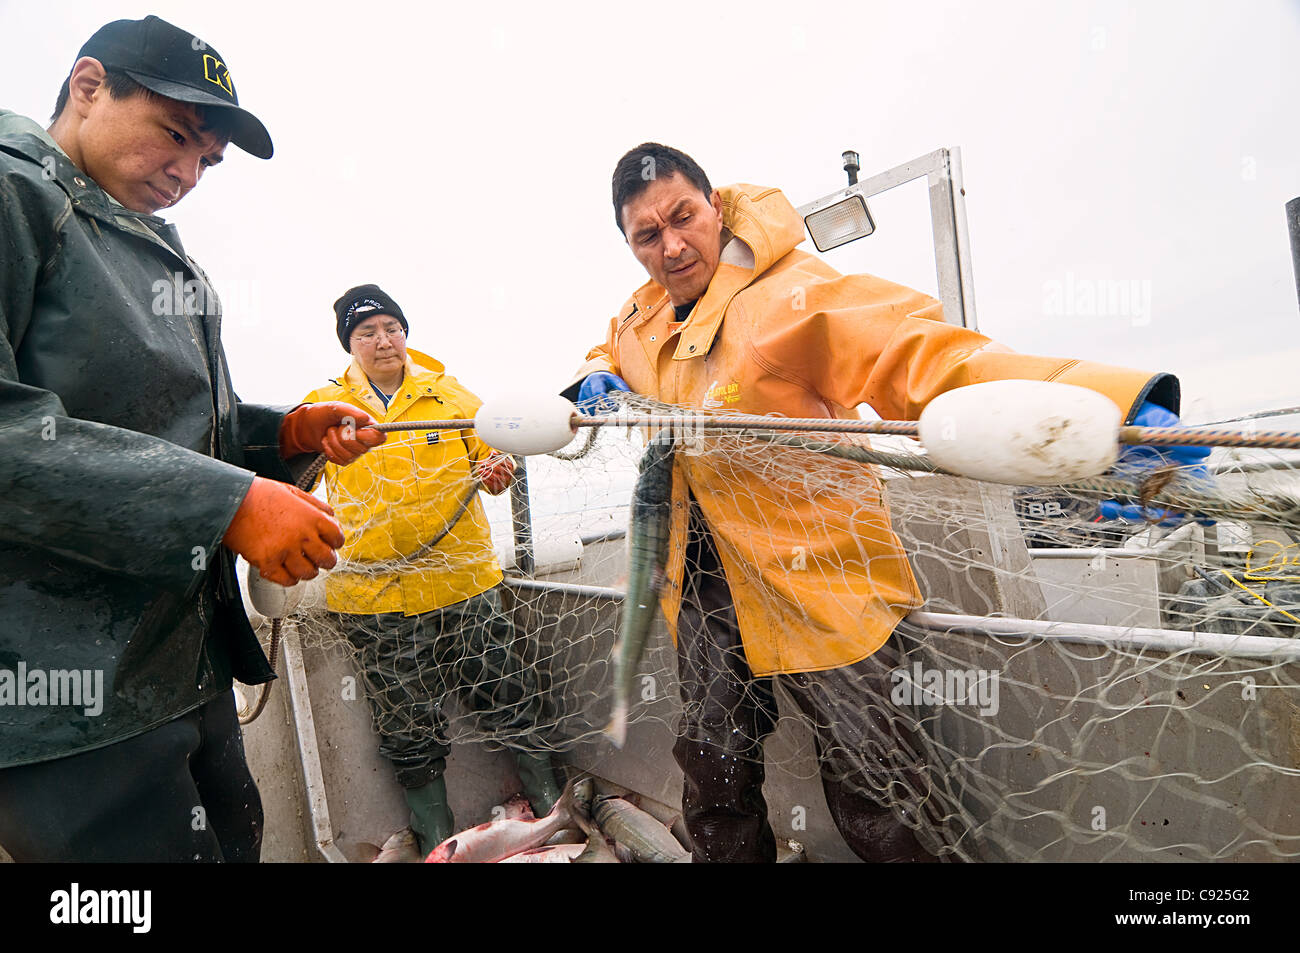 Native Family tire leur filet fixe tandis que la pêche commerciale du saumon rouge dans la baie de Bristol, au sud-ouest de l'été, AK Banque D'Images